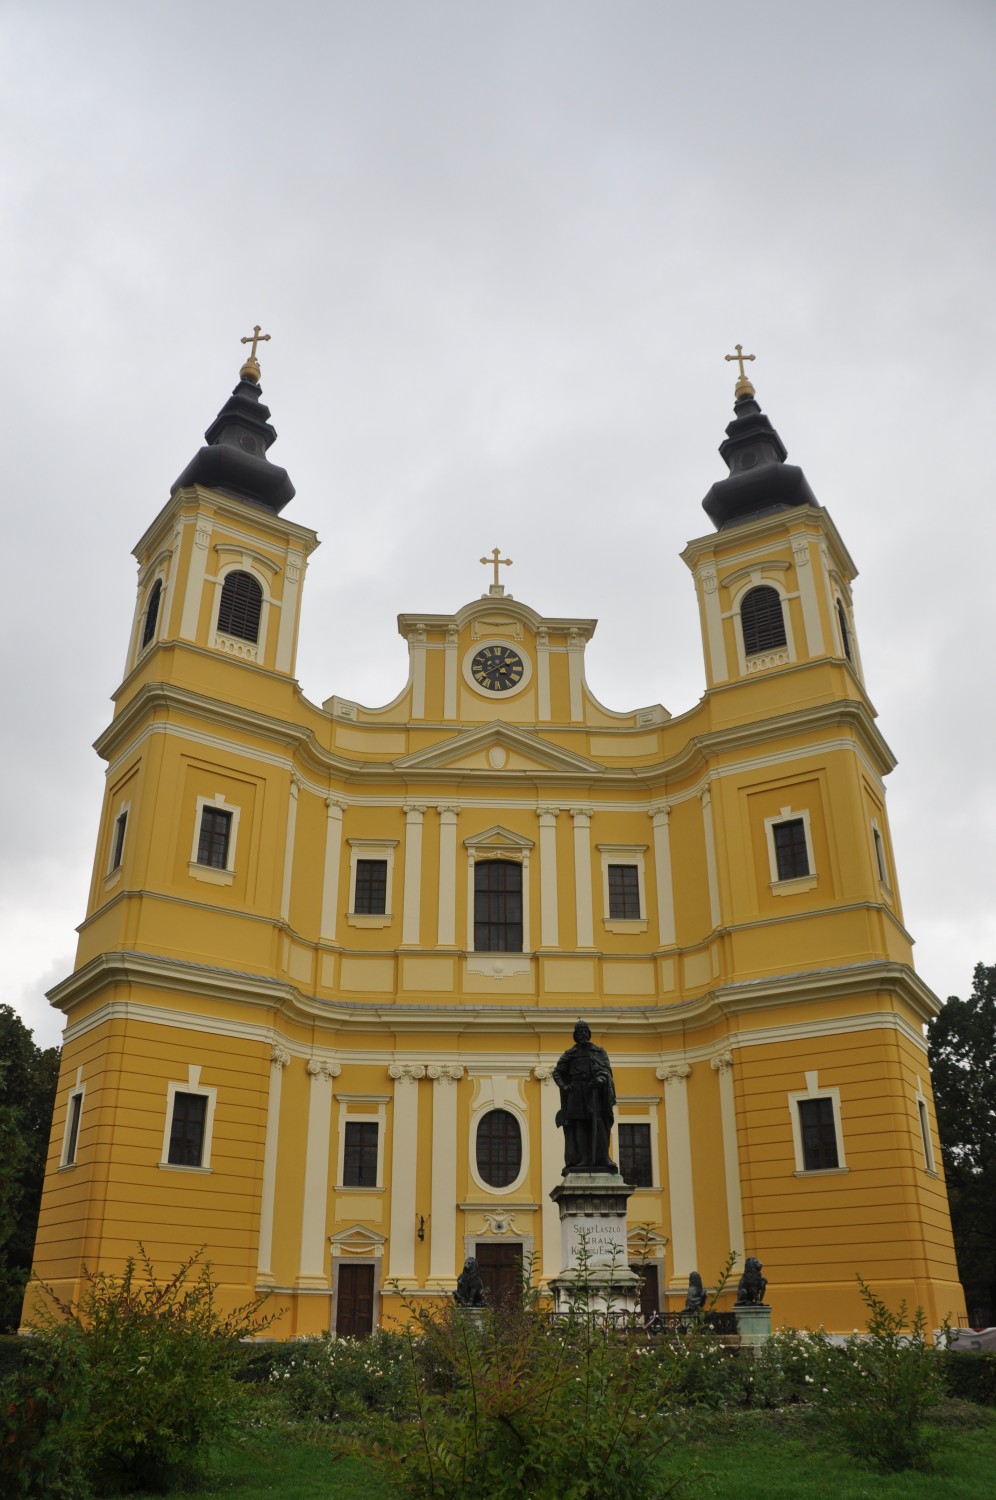 A church in Oradea